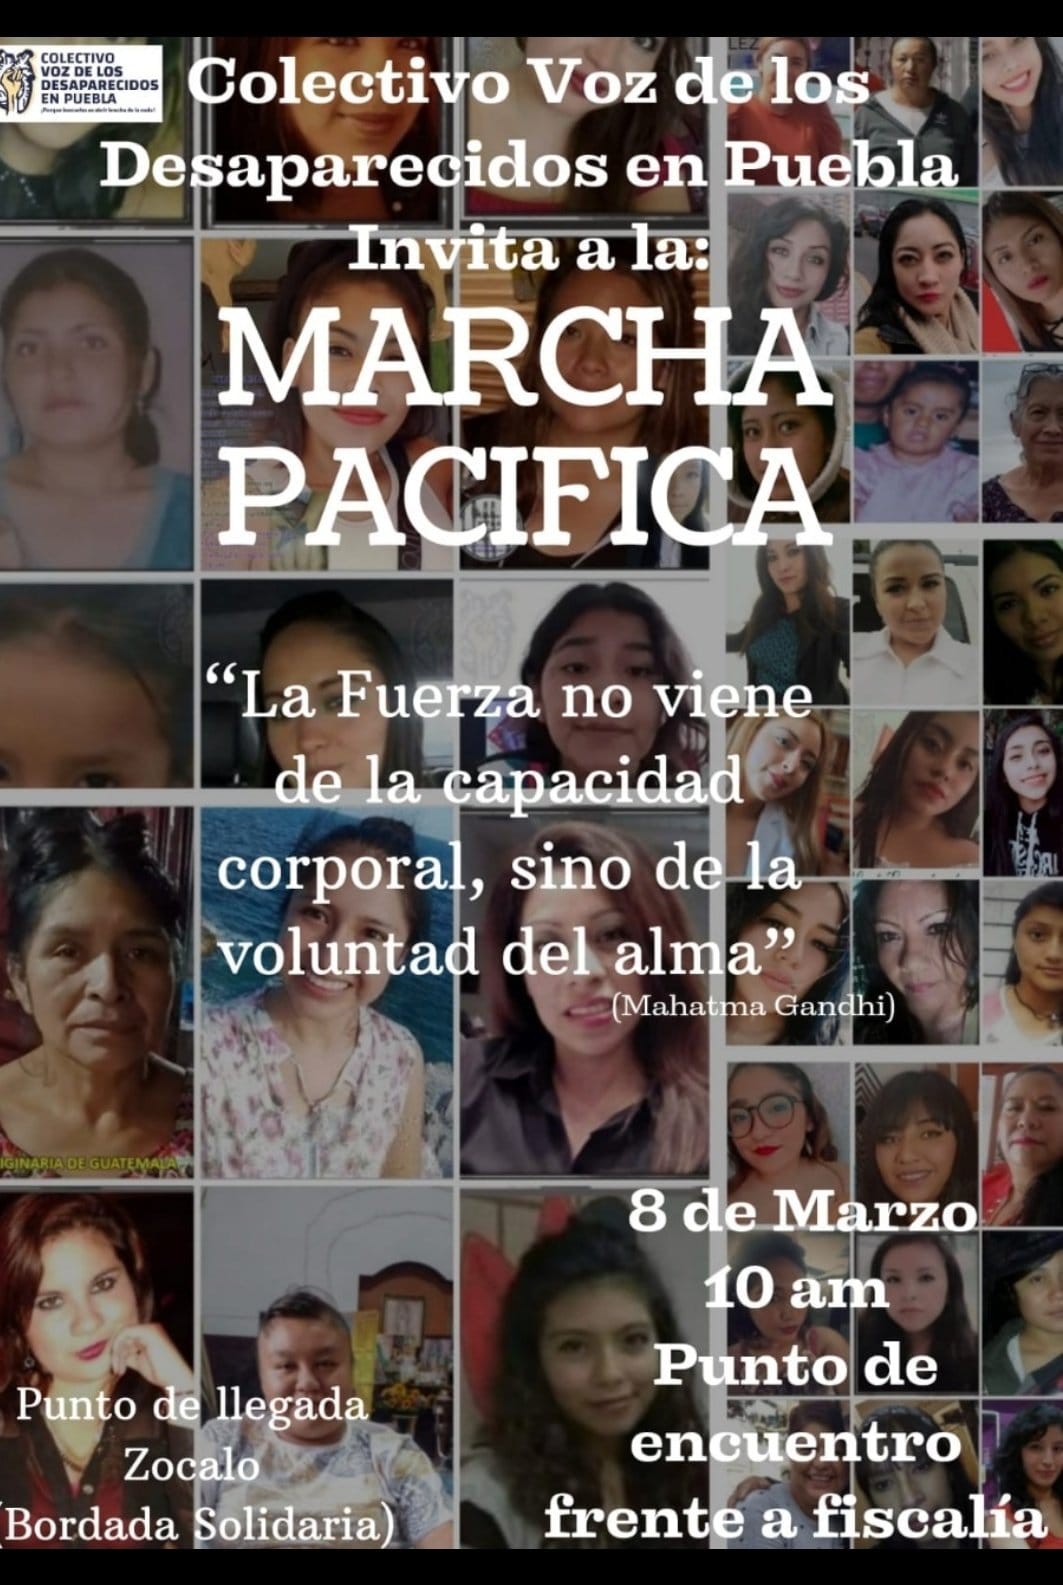 Desde las 10 am comenzarán marchas del 8m en Puebla